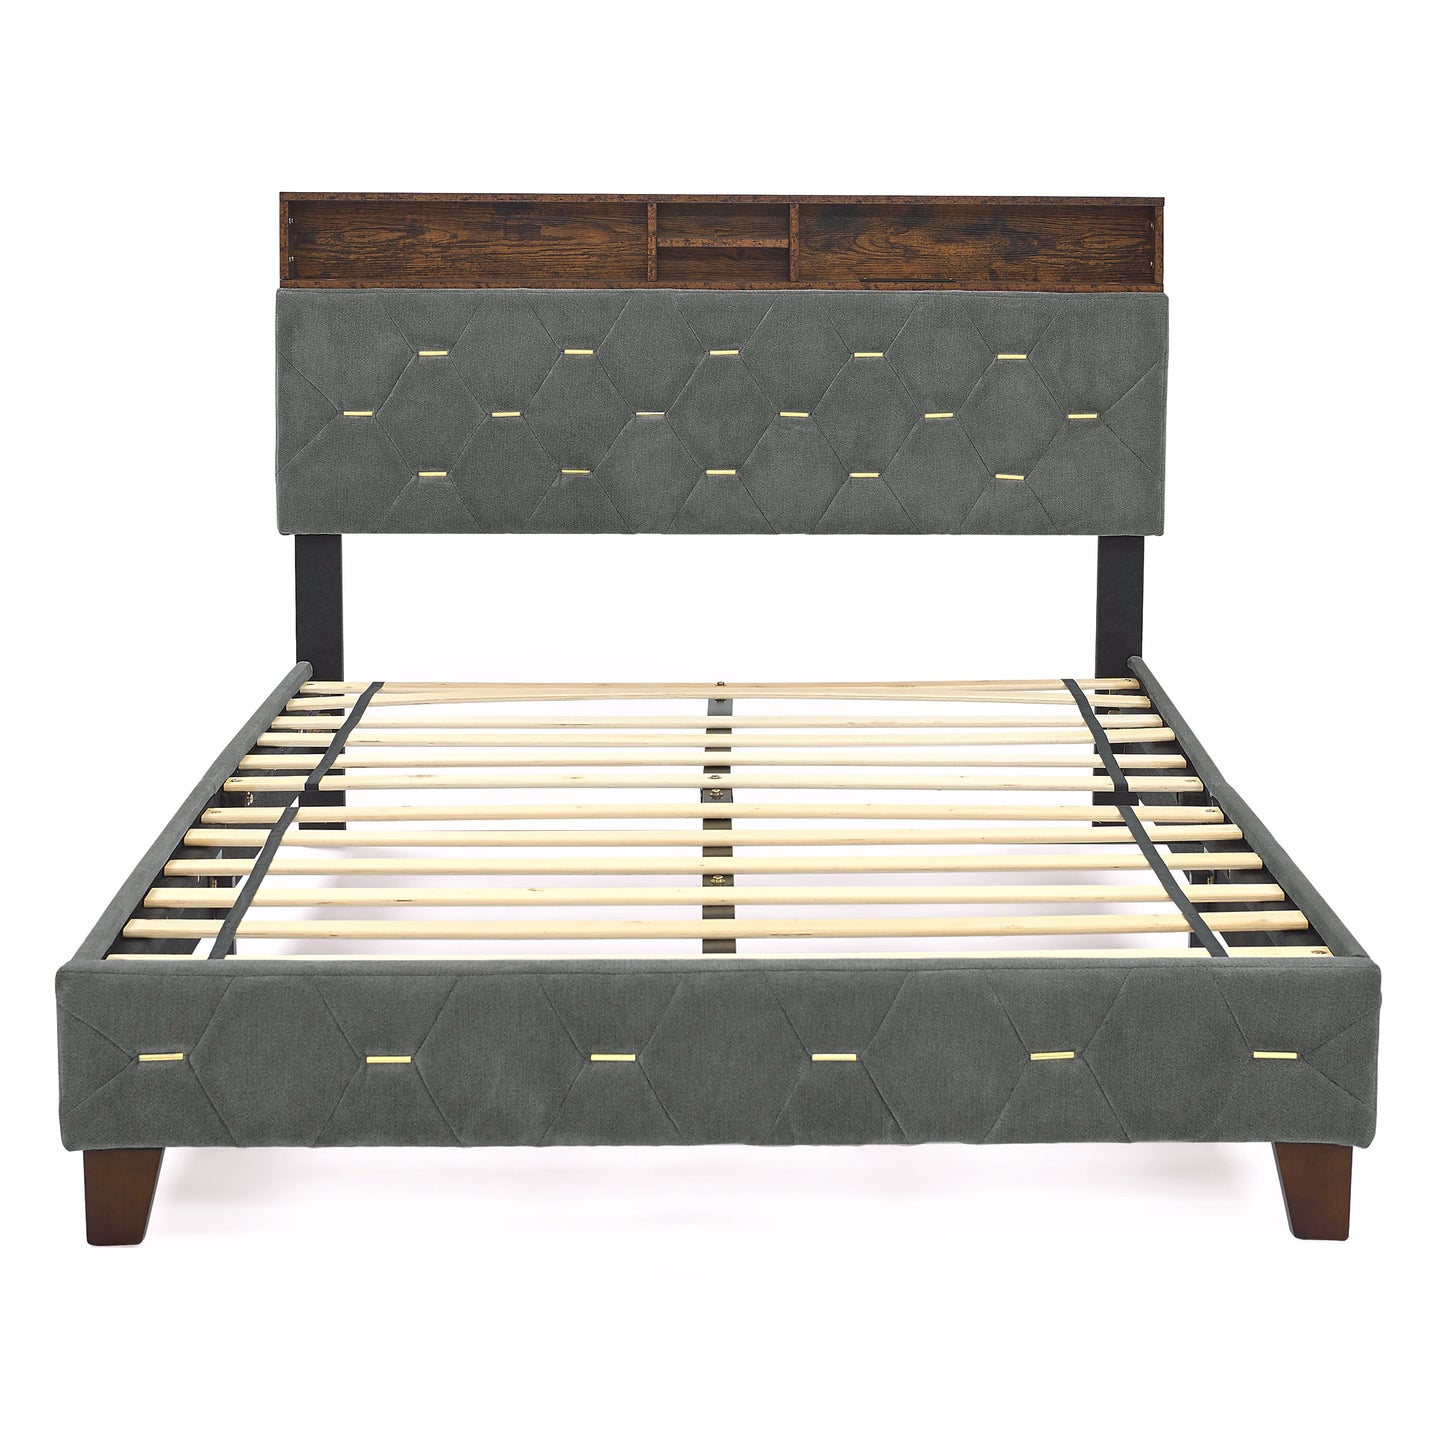 Evie Full Bed (gray)